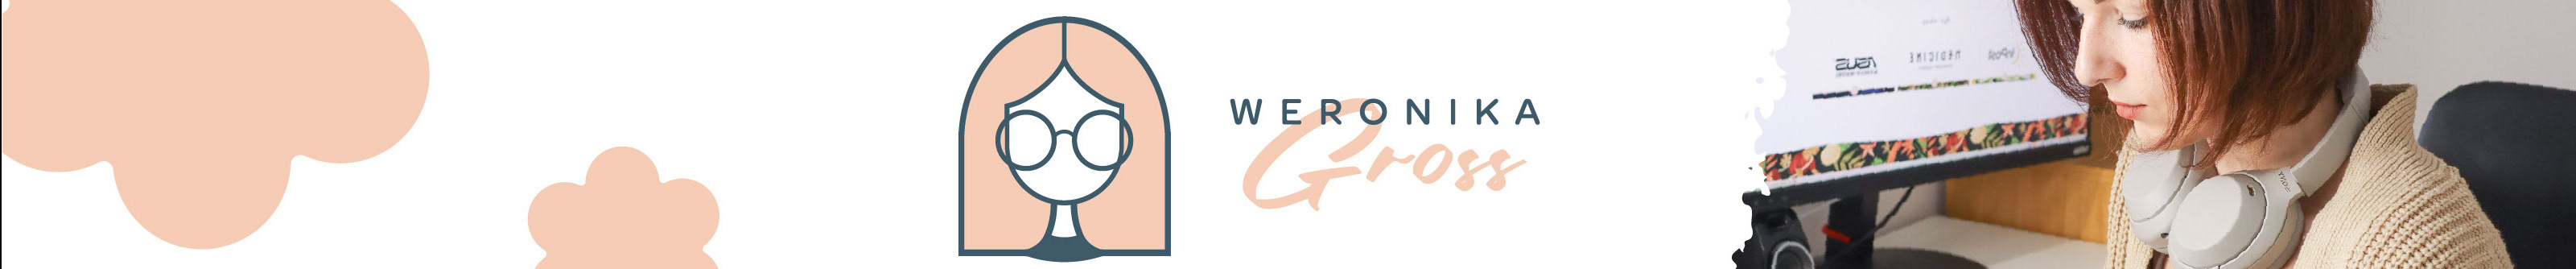 Profil-Banner von Weronika Gross